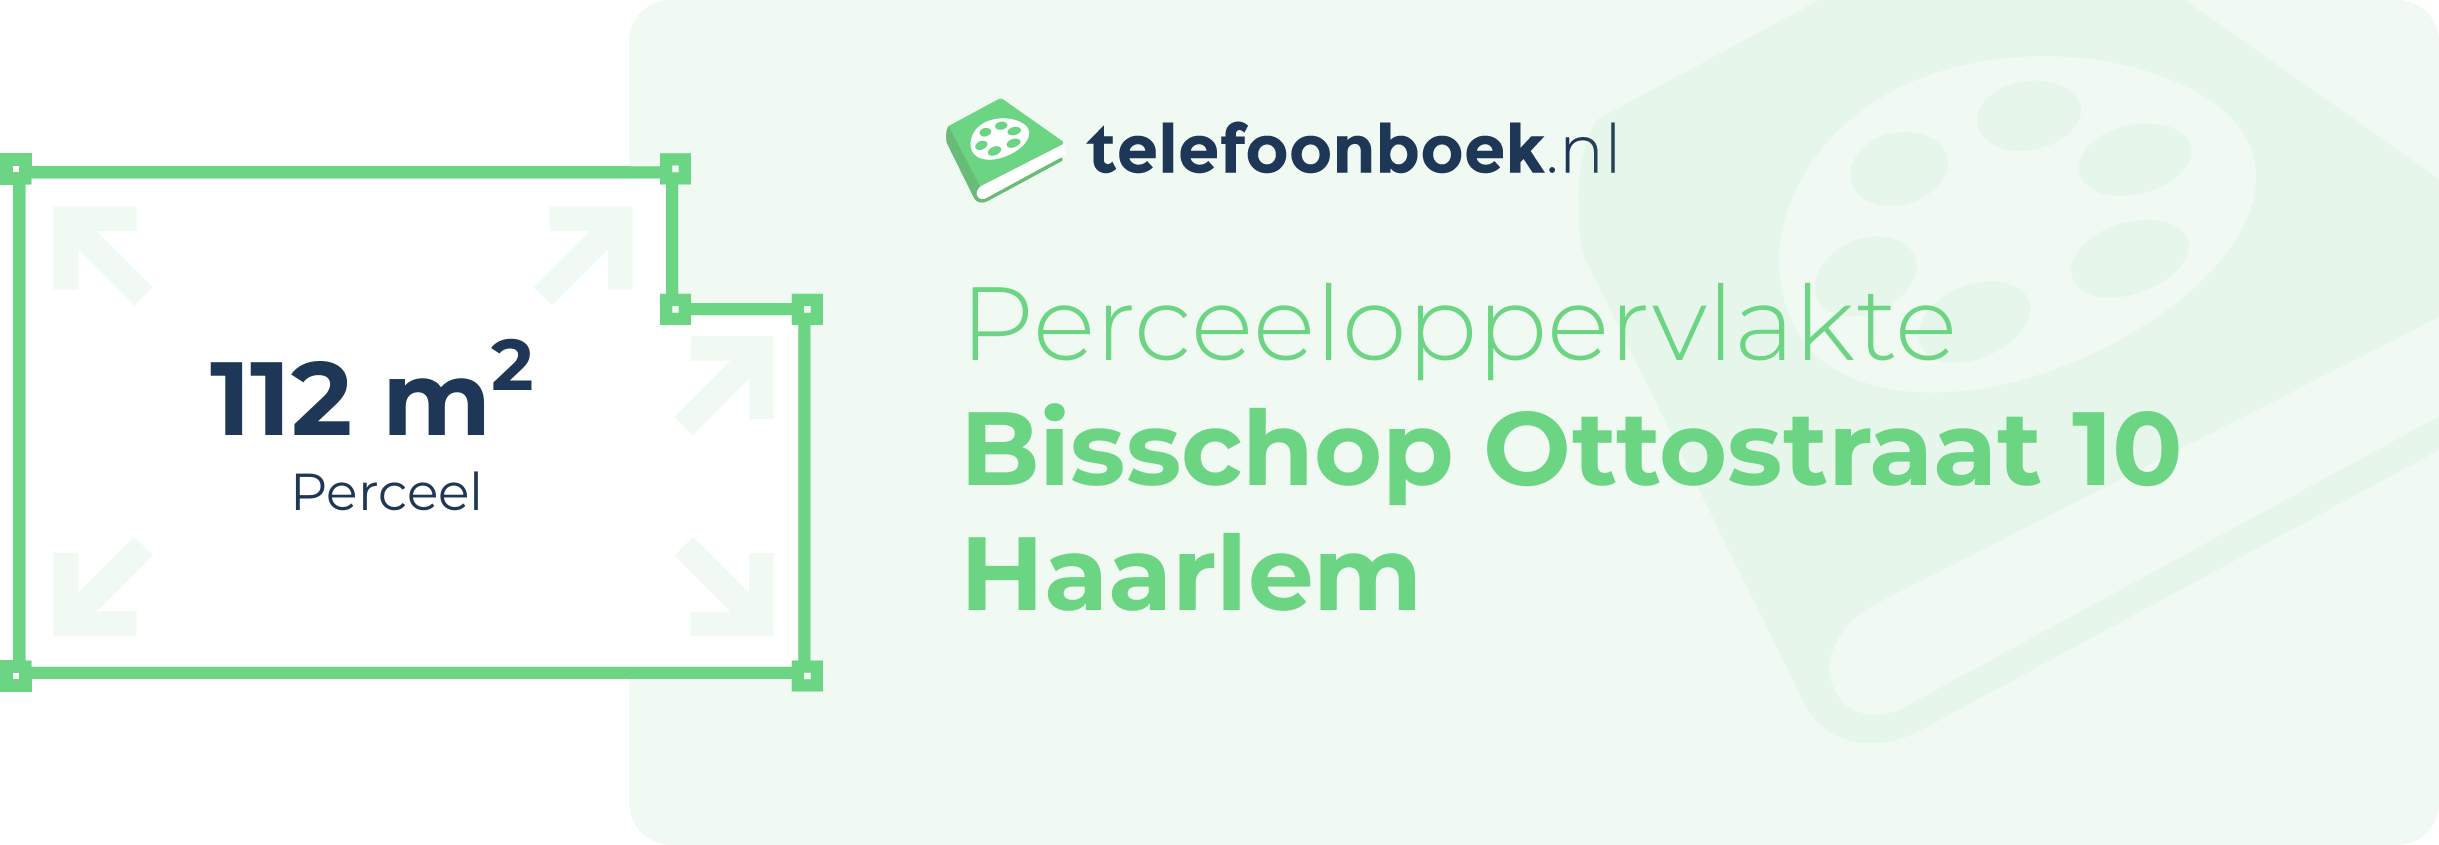 Perceeloppervlakte Bisschop Ottostraat 10 Haarlem